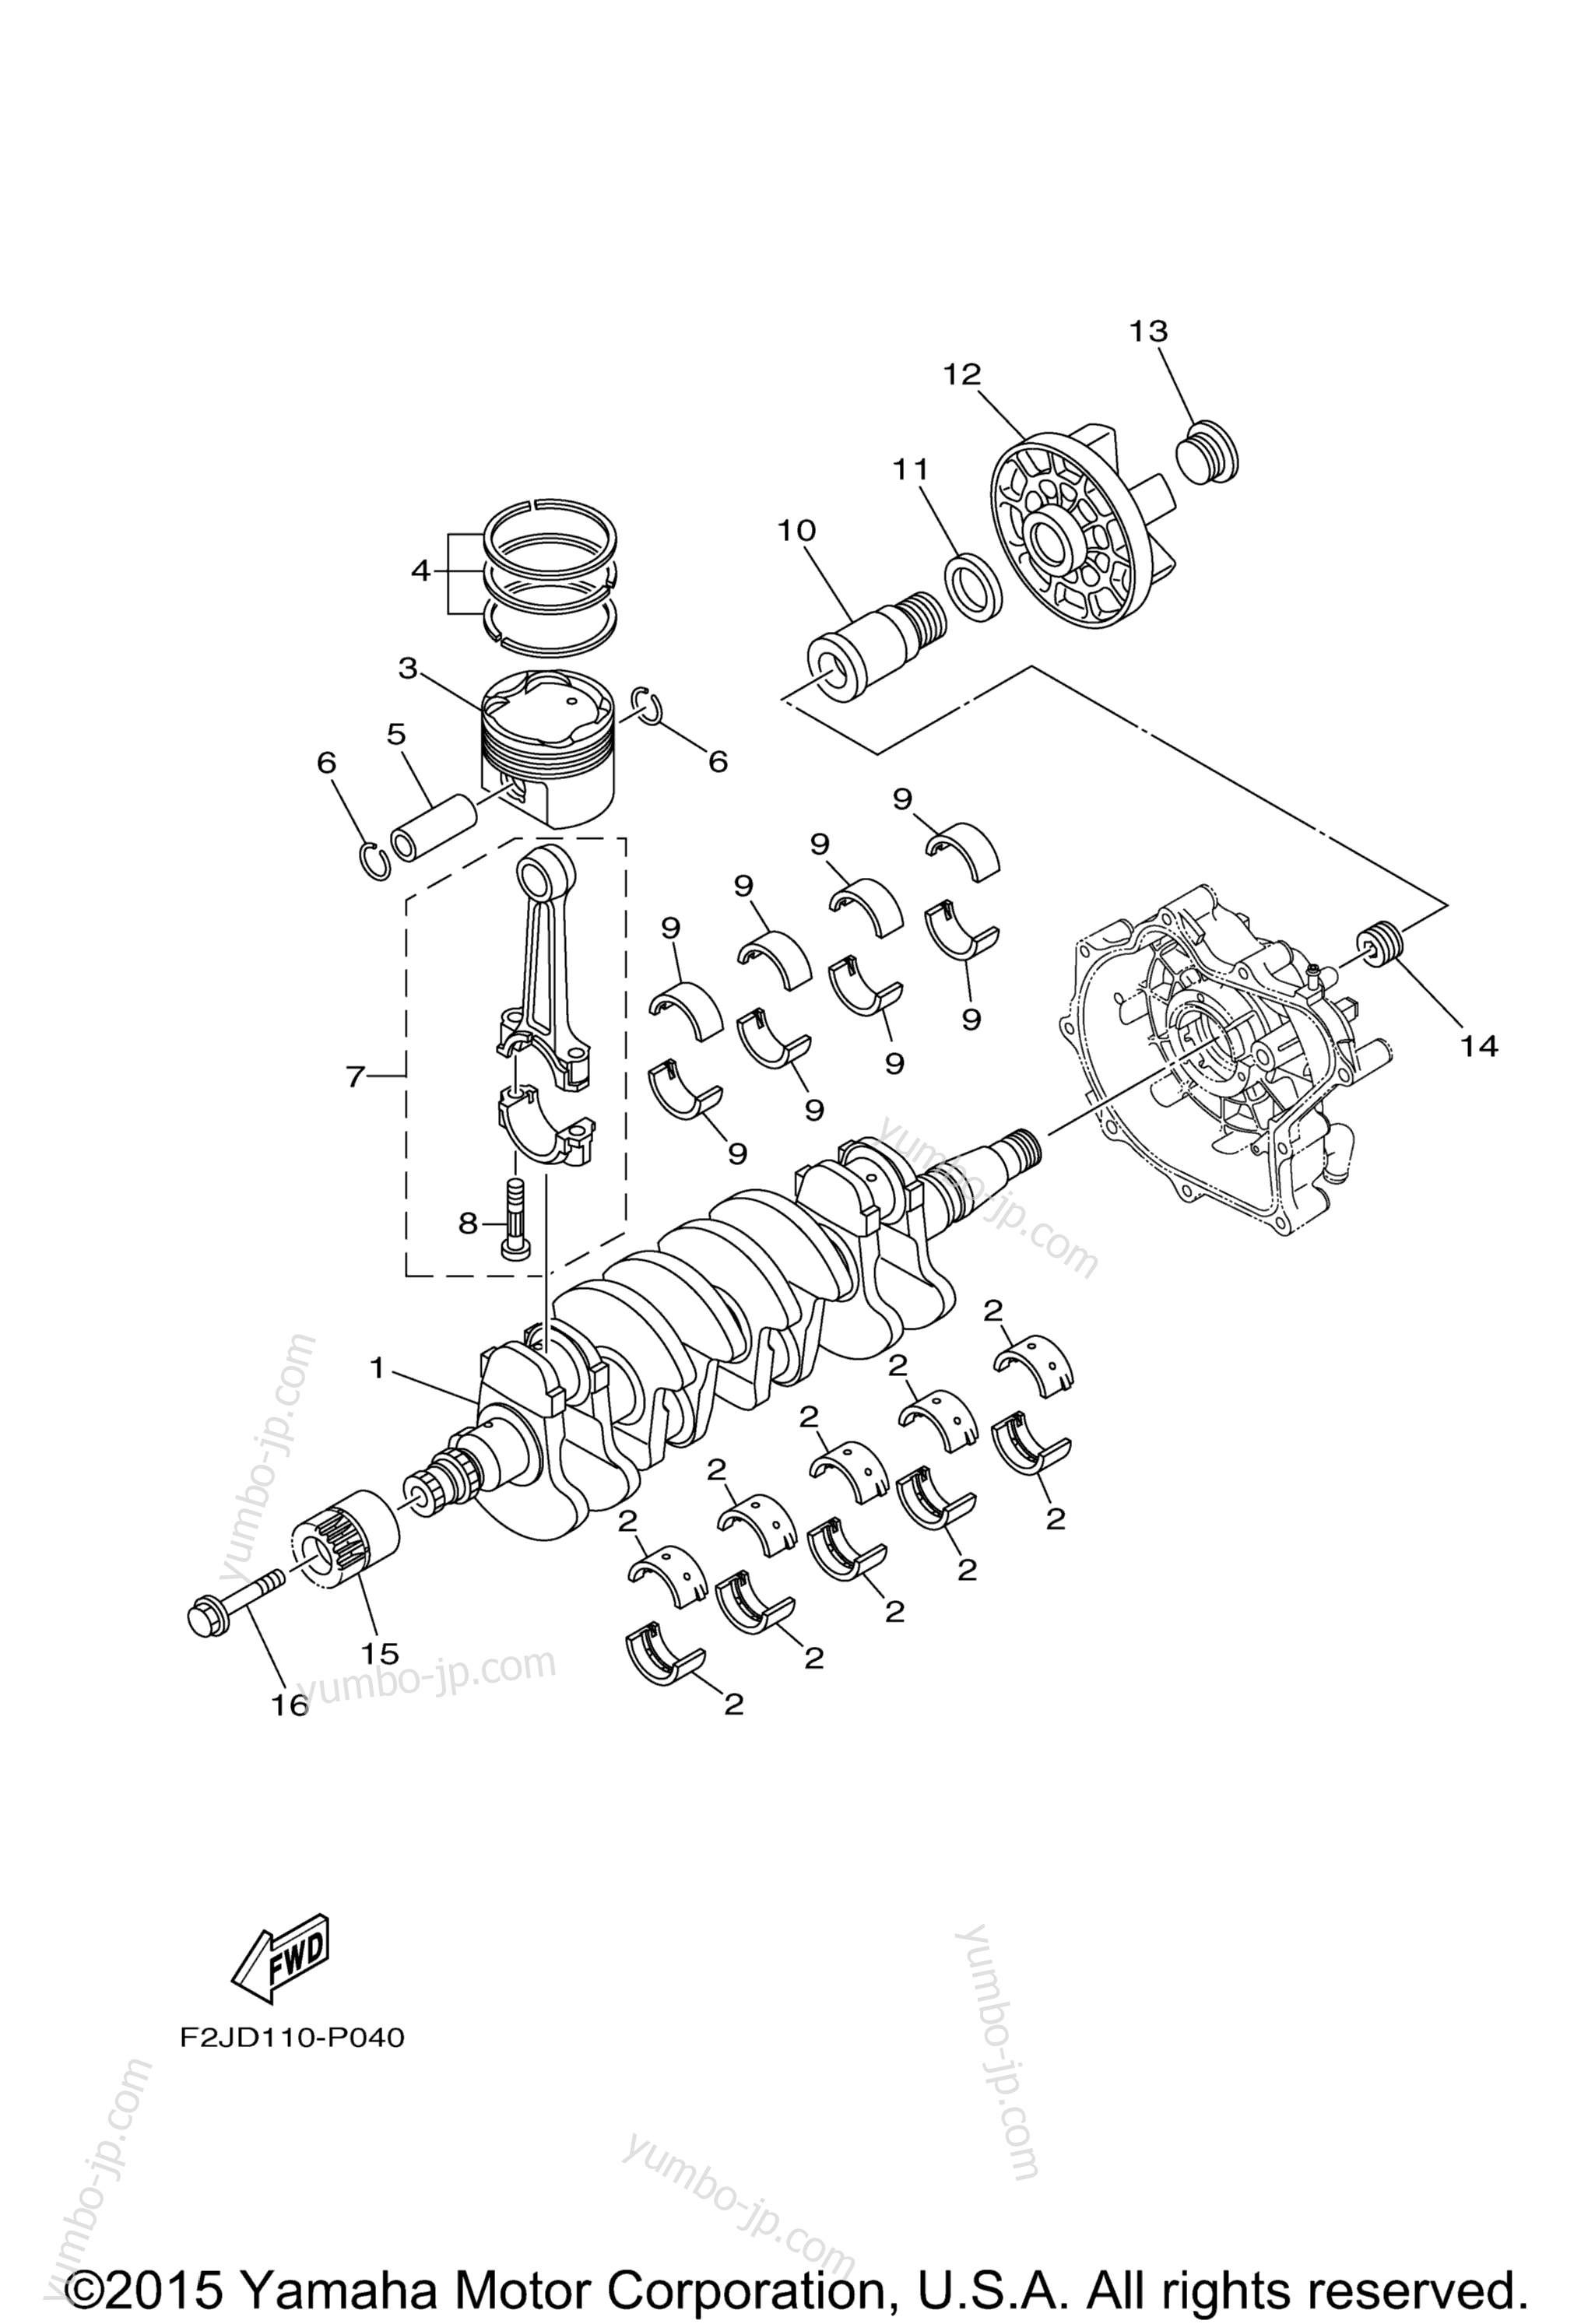 Crankshaft & Piston для катеров YAMAHA AR190 (RX1800ARB) CA 2016 г.